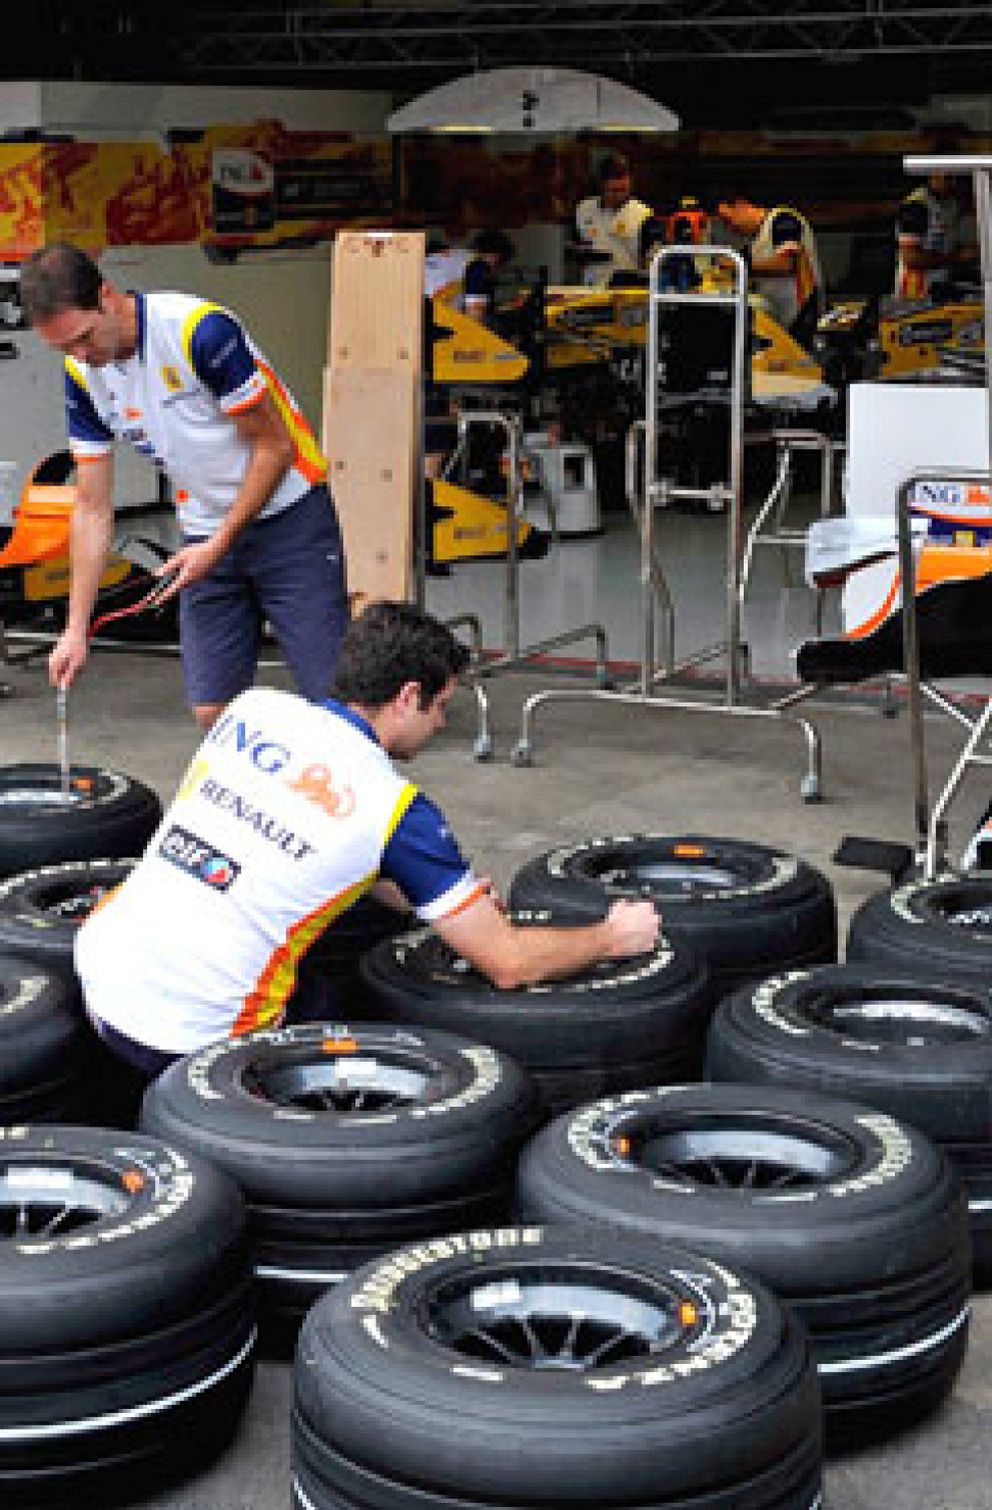 Foto: El equipo Renault de F1 tampoco se salva y echa a 120 empleados